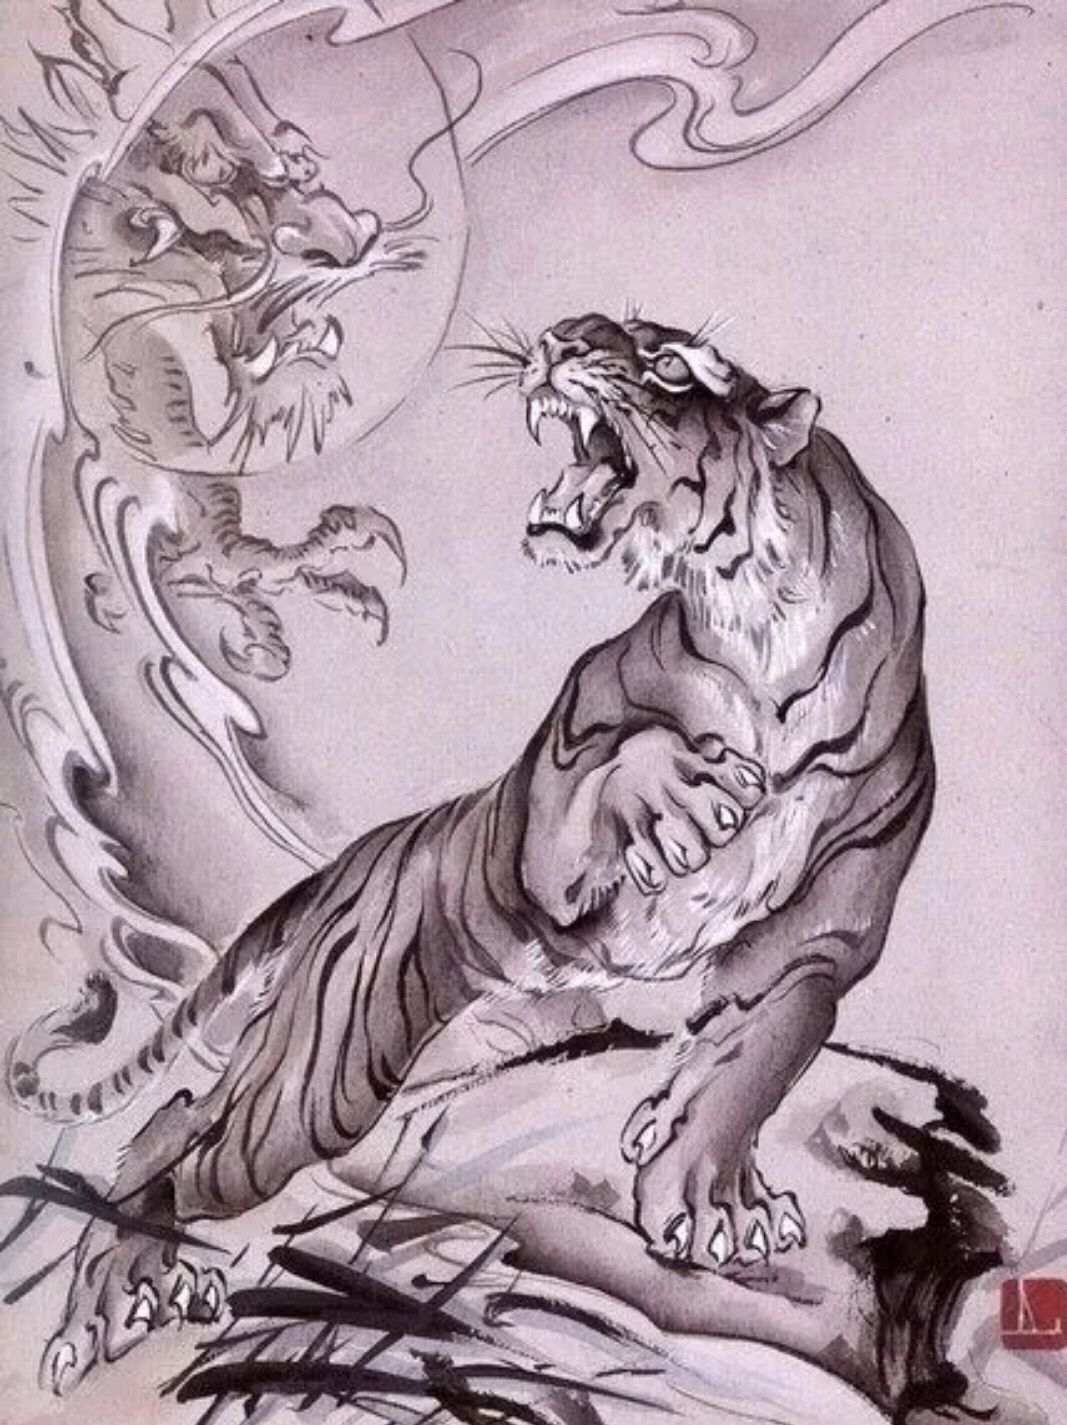 老虎纹身手稿线条图片